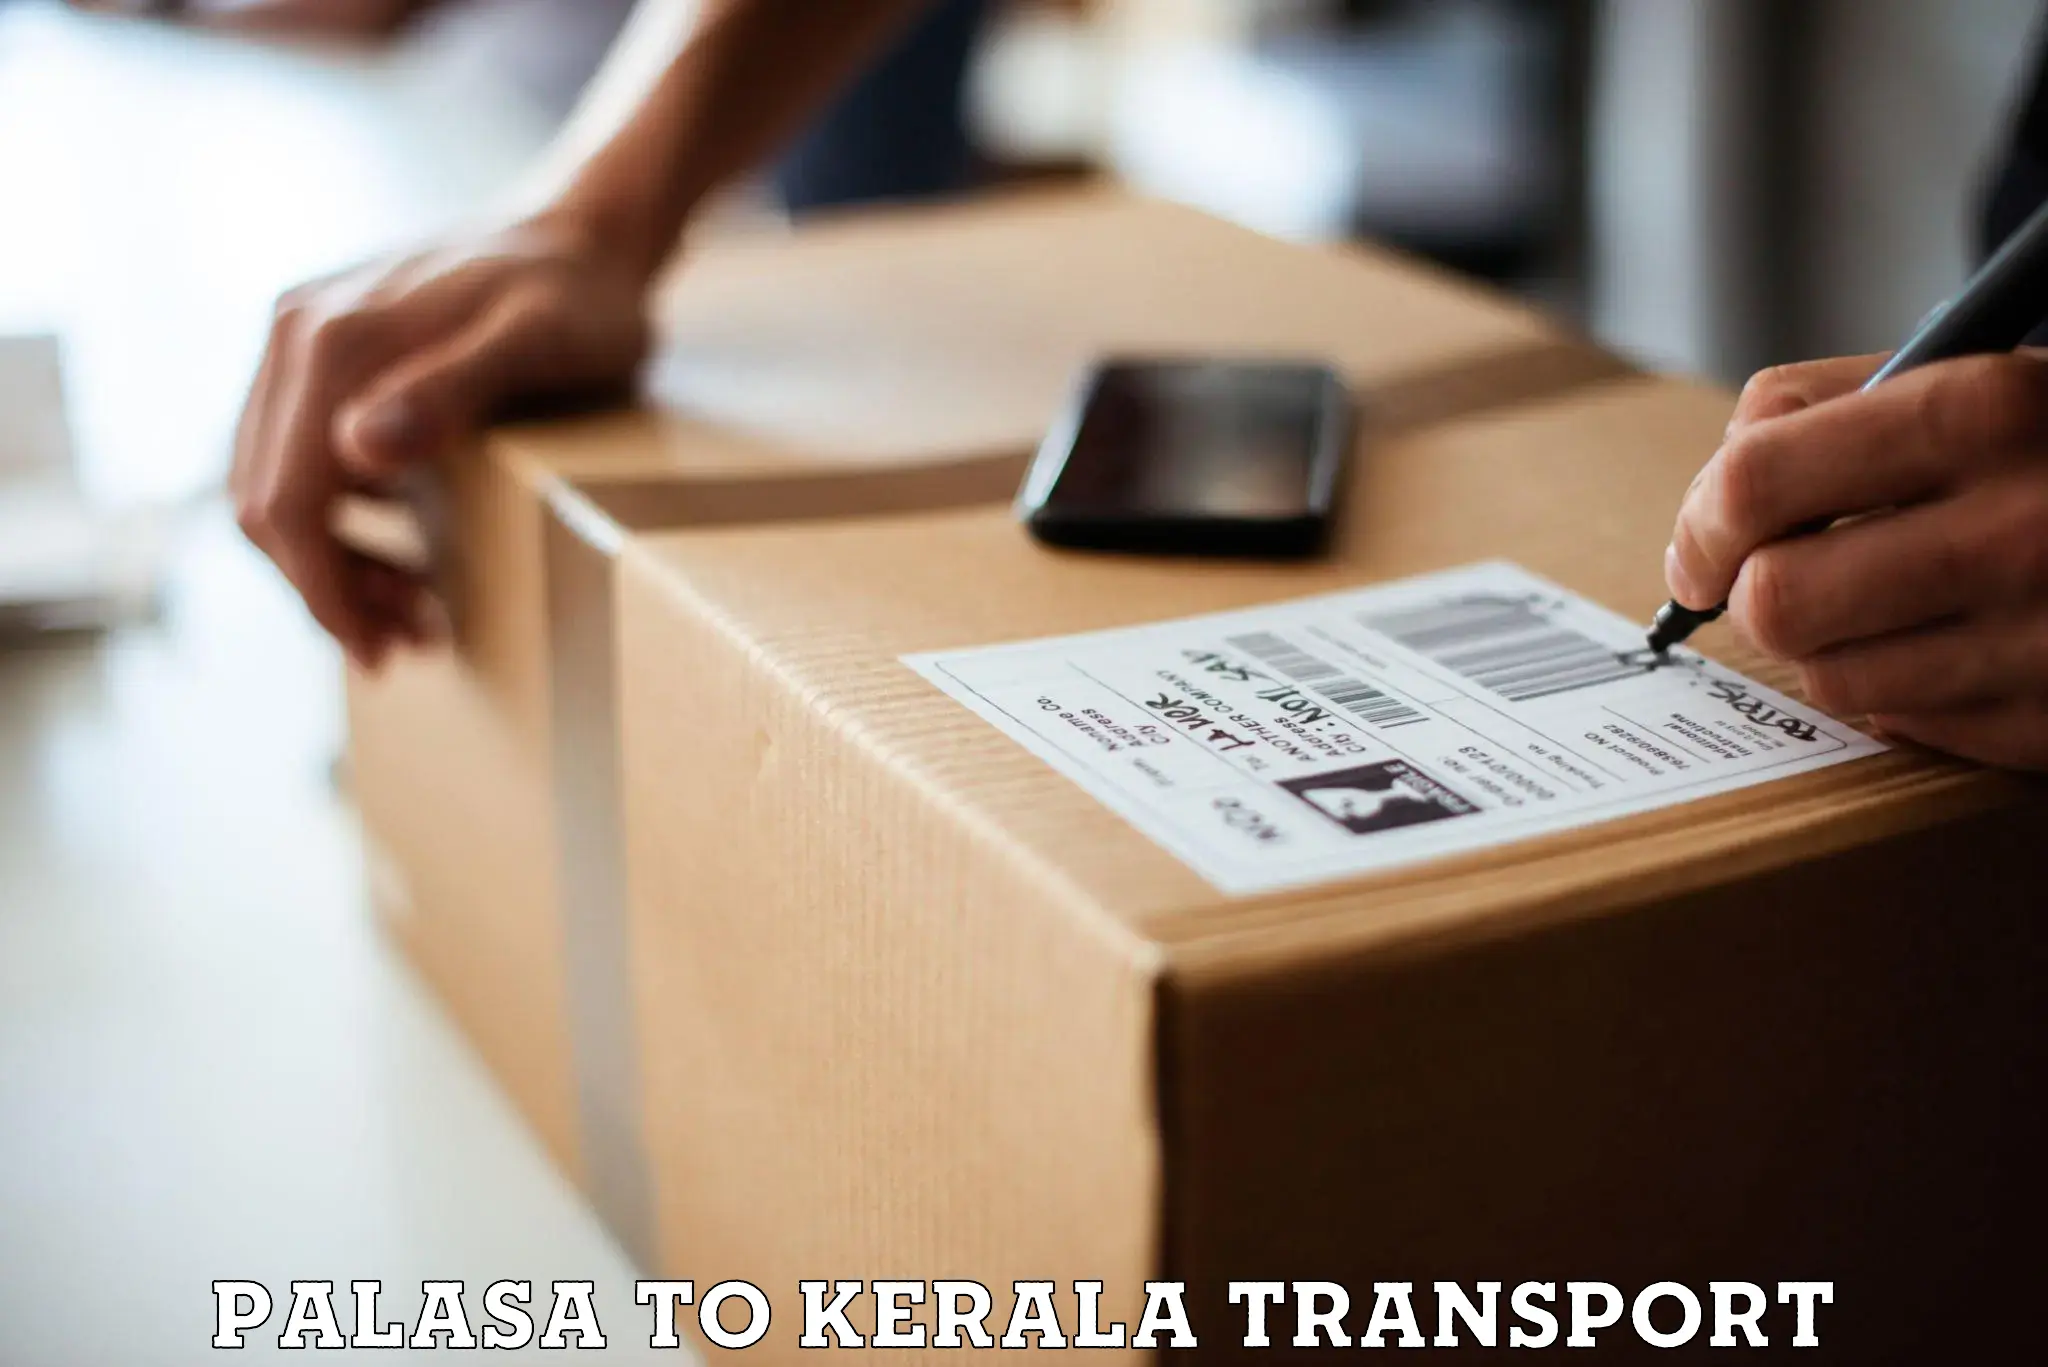 Transport in sharing Palasa to Kerala